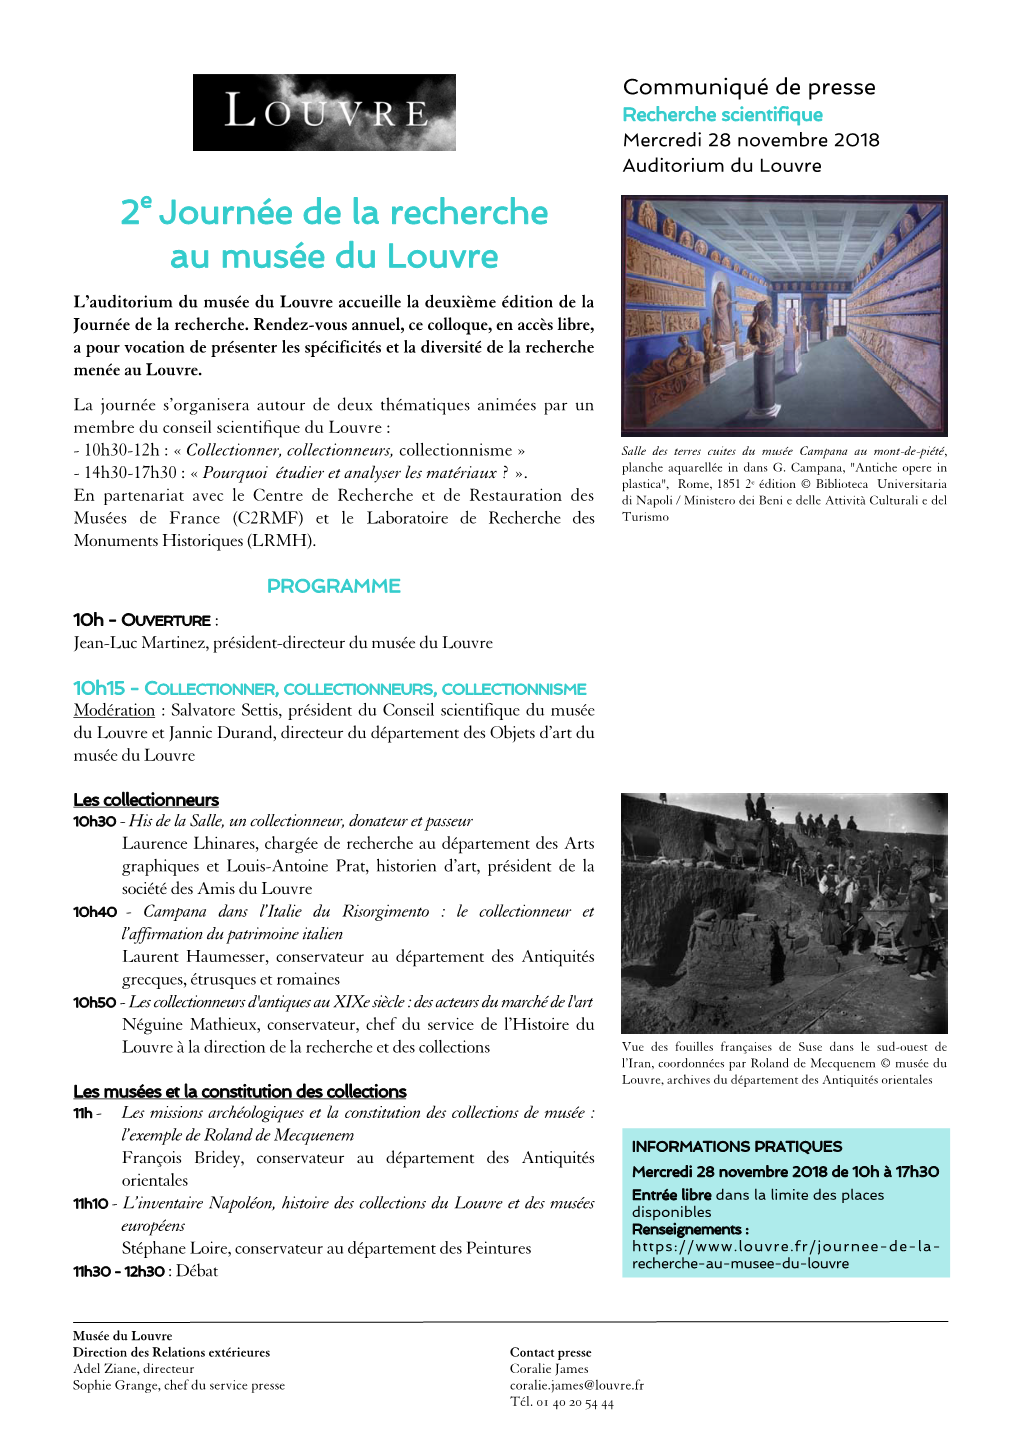 CP Louvre Journee De La Recherche